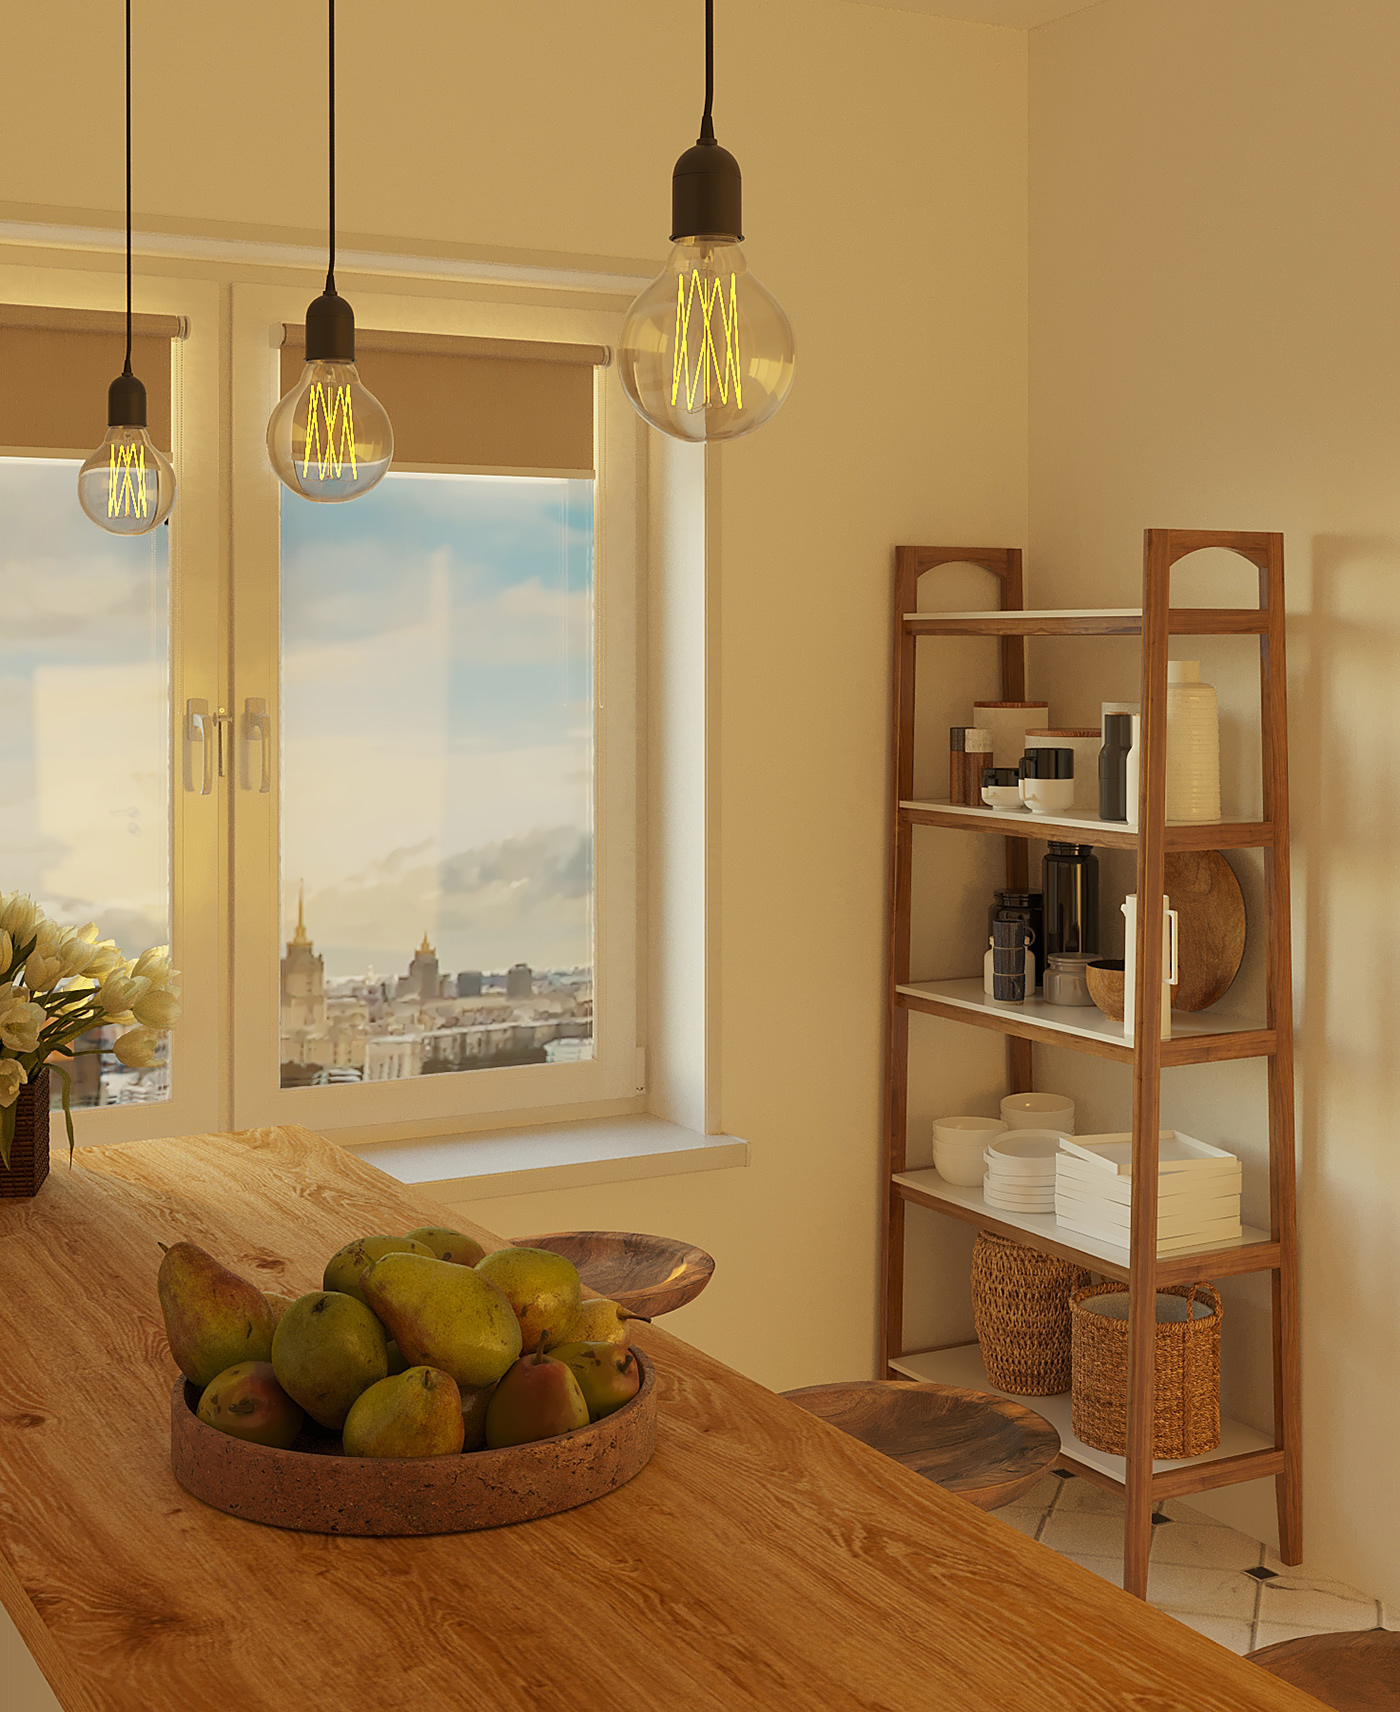 3ds max corona Interior interior design  kitchen kitchen design Render visualization дизайн интерьера